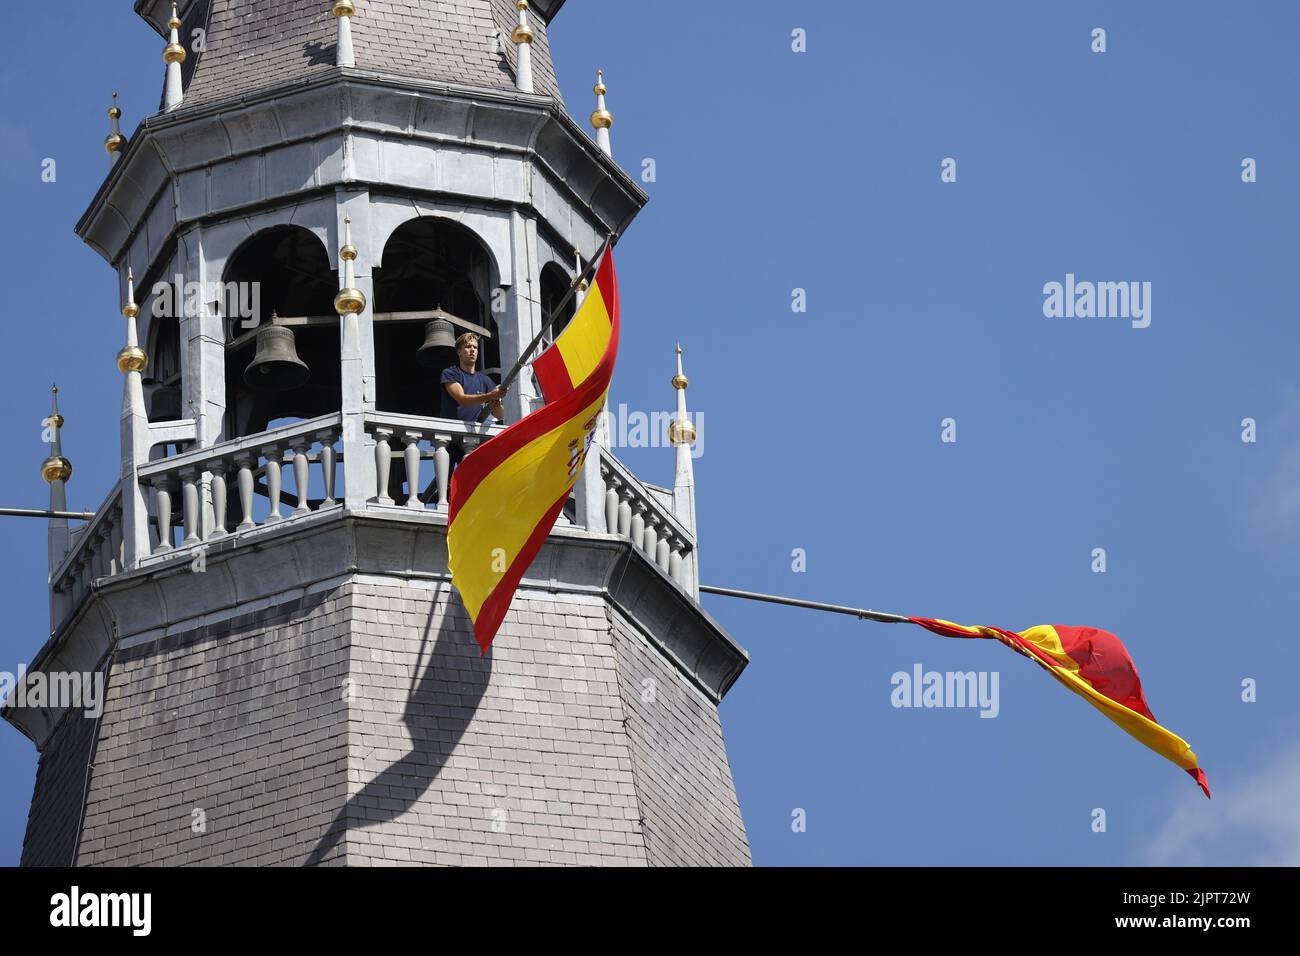 DEN BOSCH - bandiere spagnole sulla Cattedrale di San Giovanni durante l'inizio della seconda tappa della Vuelta a Espana (Vuelta a Espana). La seconda tappa della Vuelta va da Den Bosch a Utrecht. Foto Stock